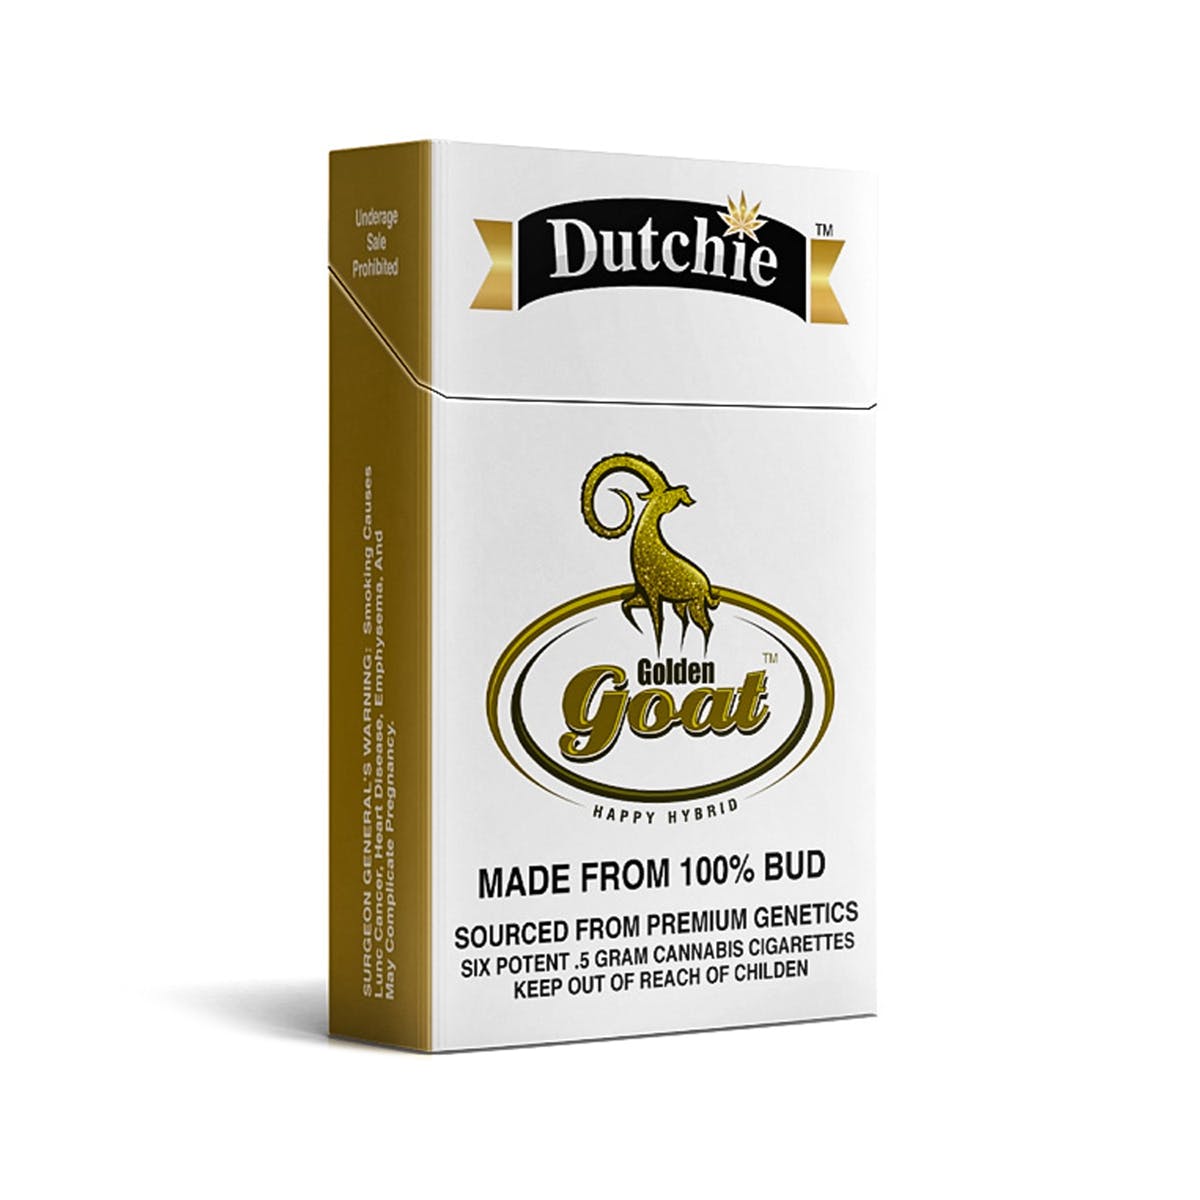 Golden Goat Dutchie